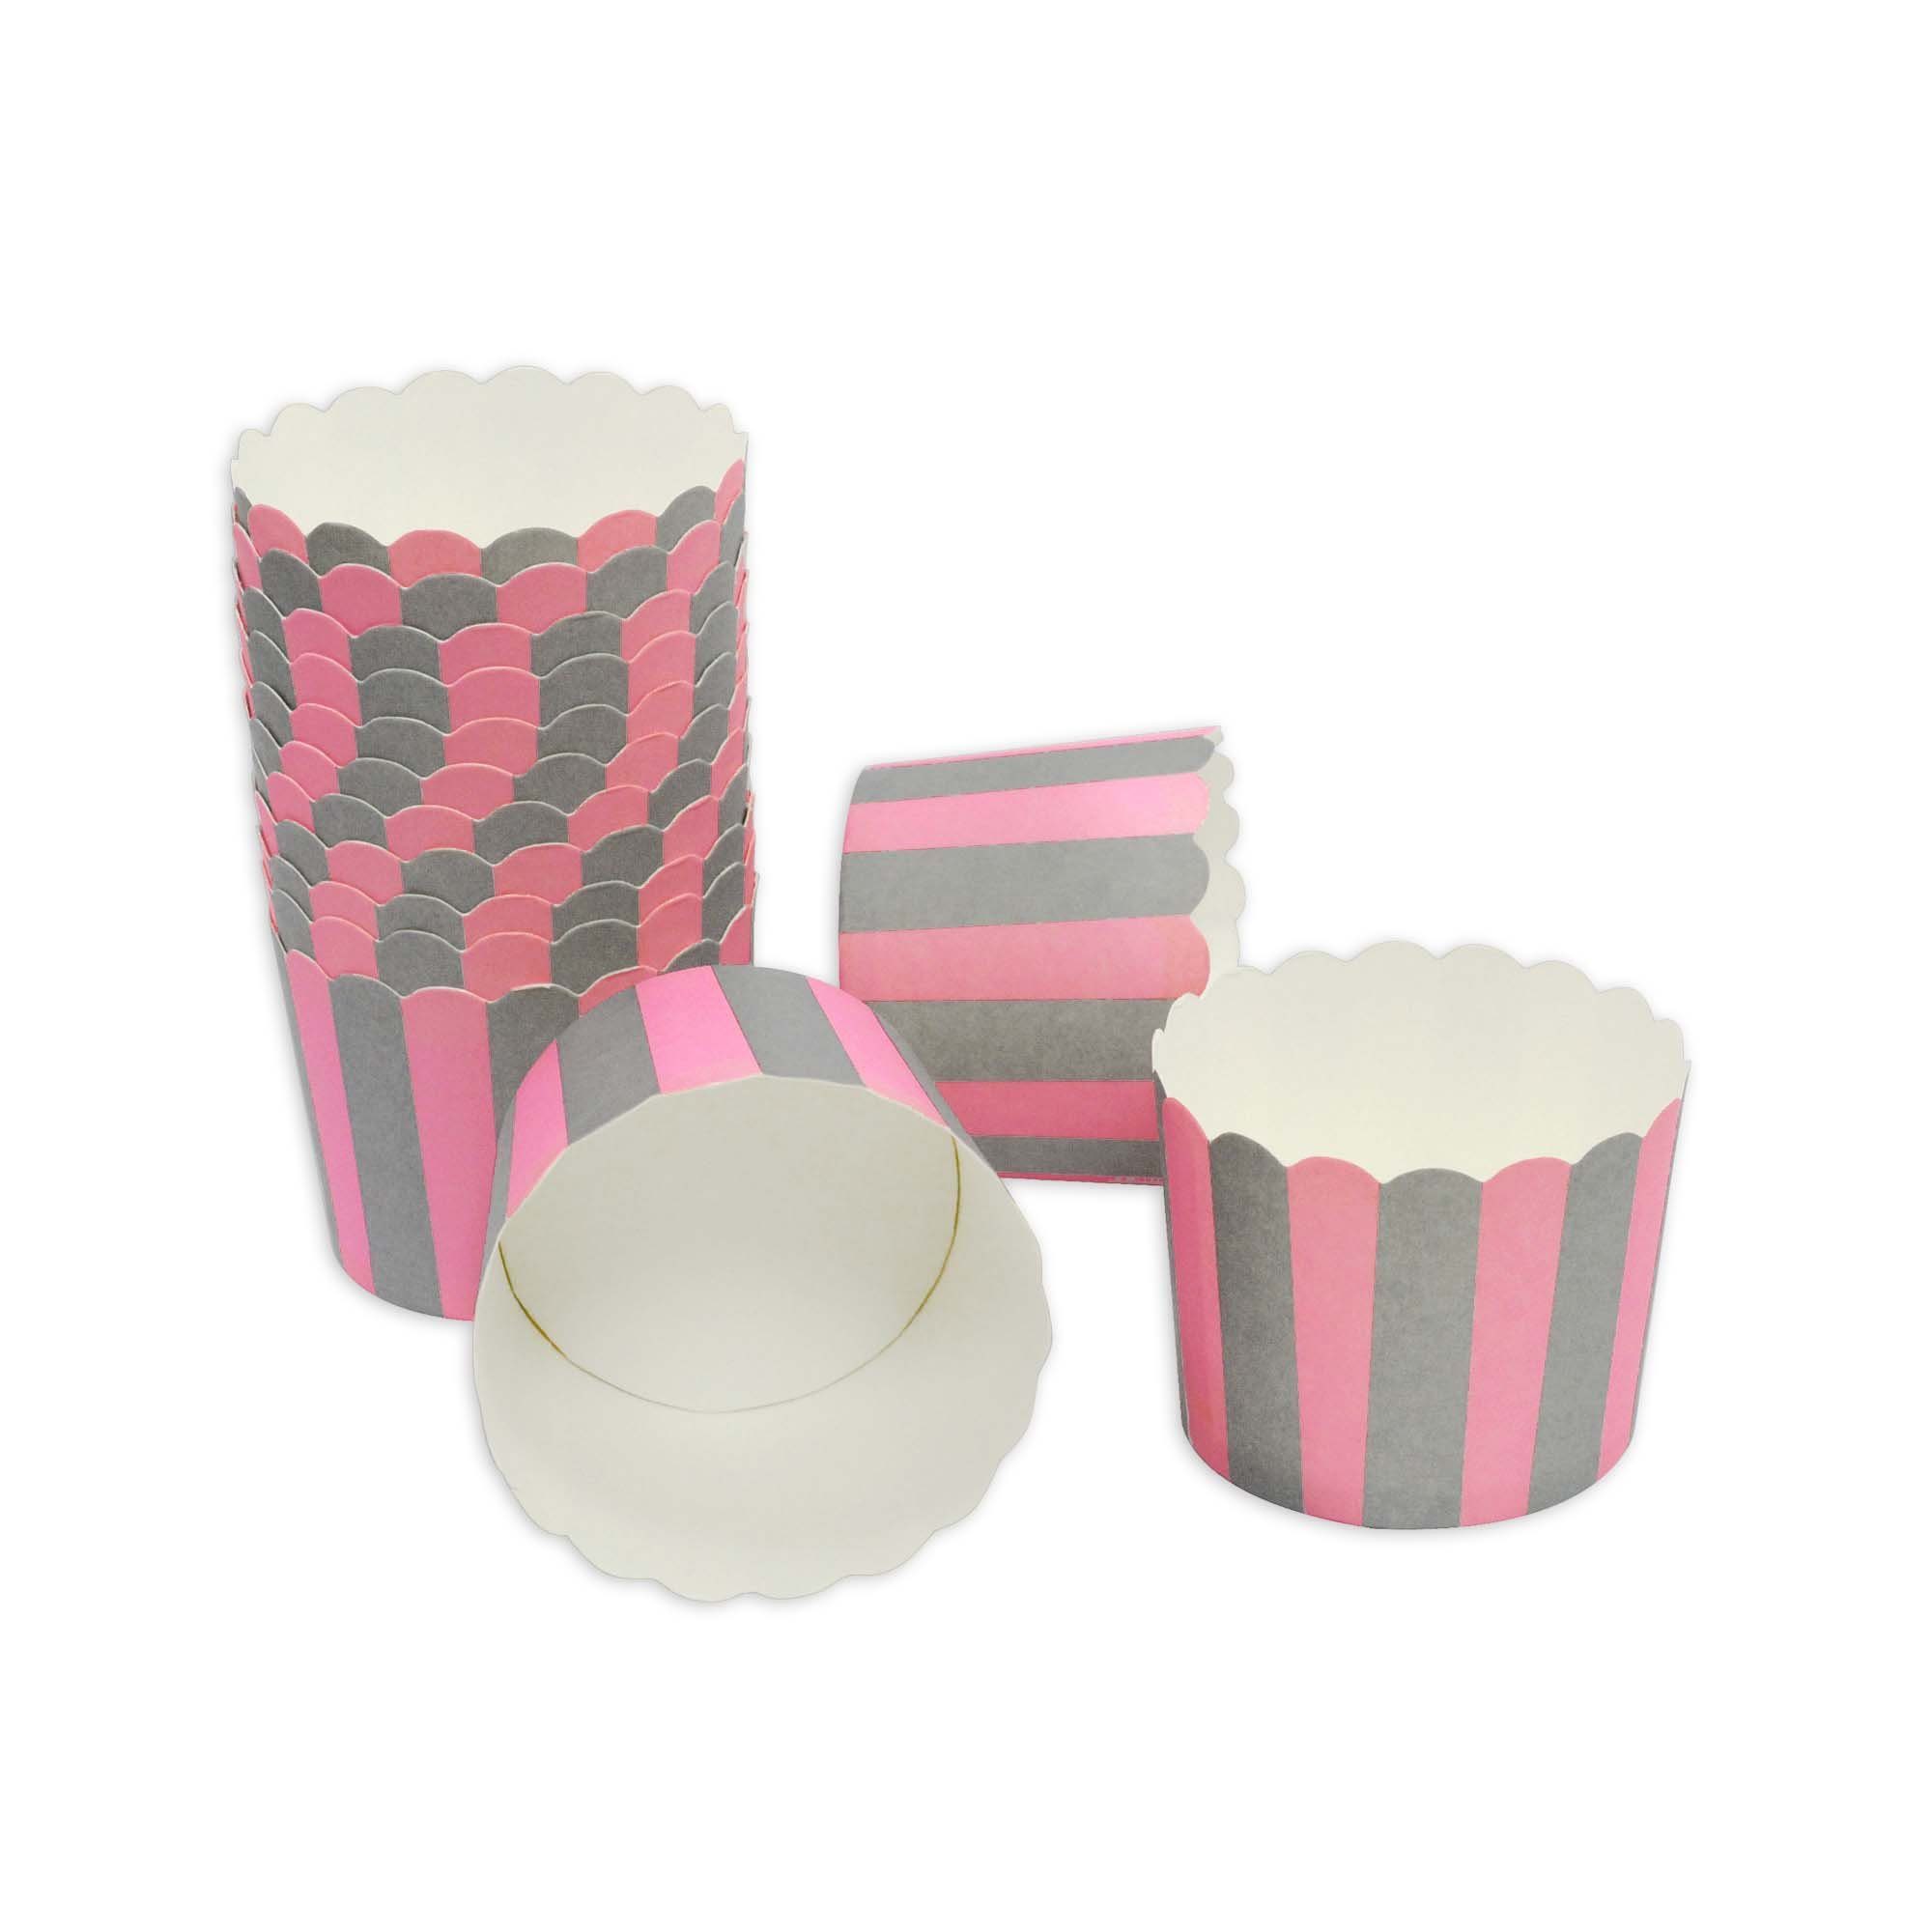 Frau WUNDERVoll Muffinform Muffin Backformenk, groß Durchmesser 6,1 cm, rosa-graue Streifen, (25-tlg) | Muffinformen